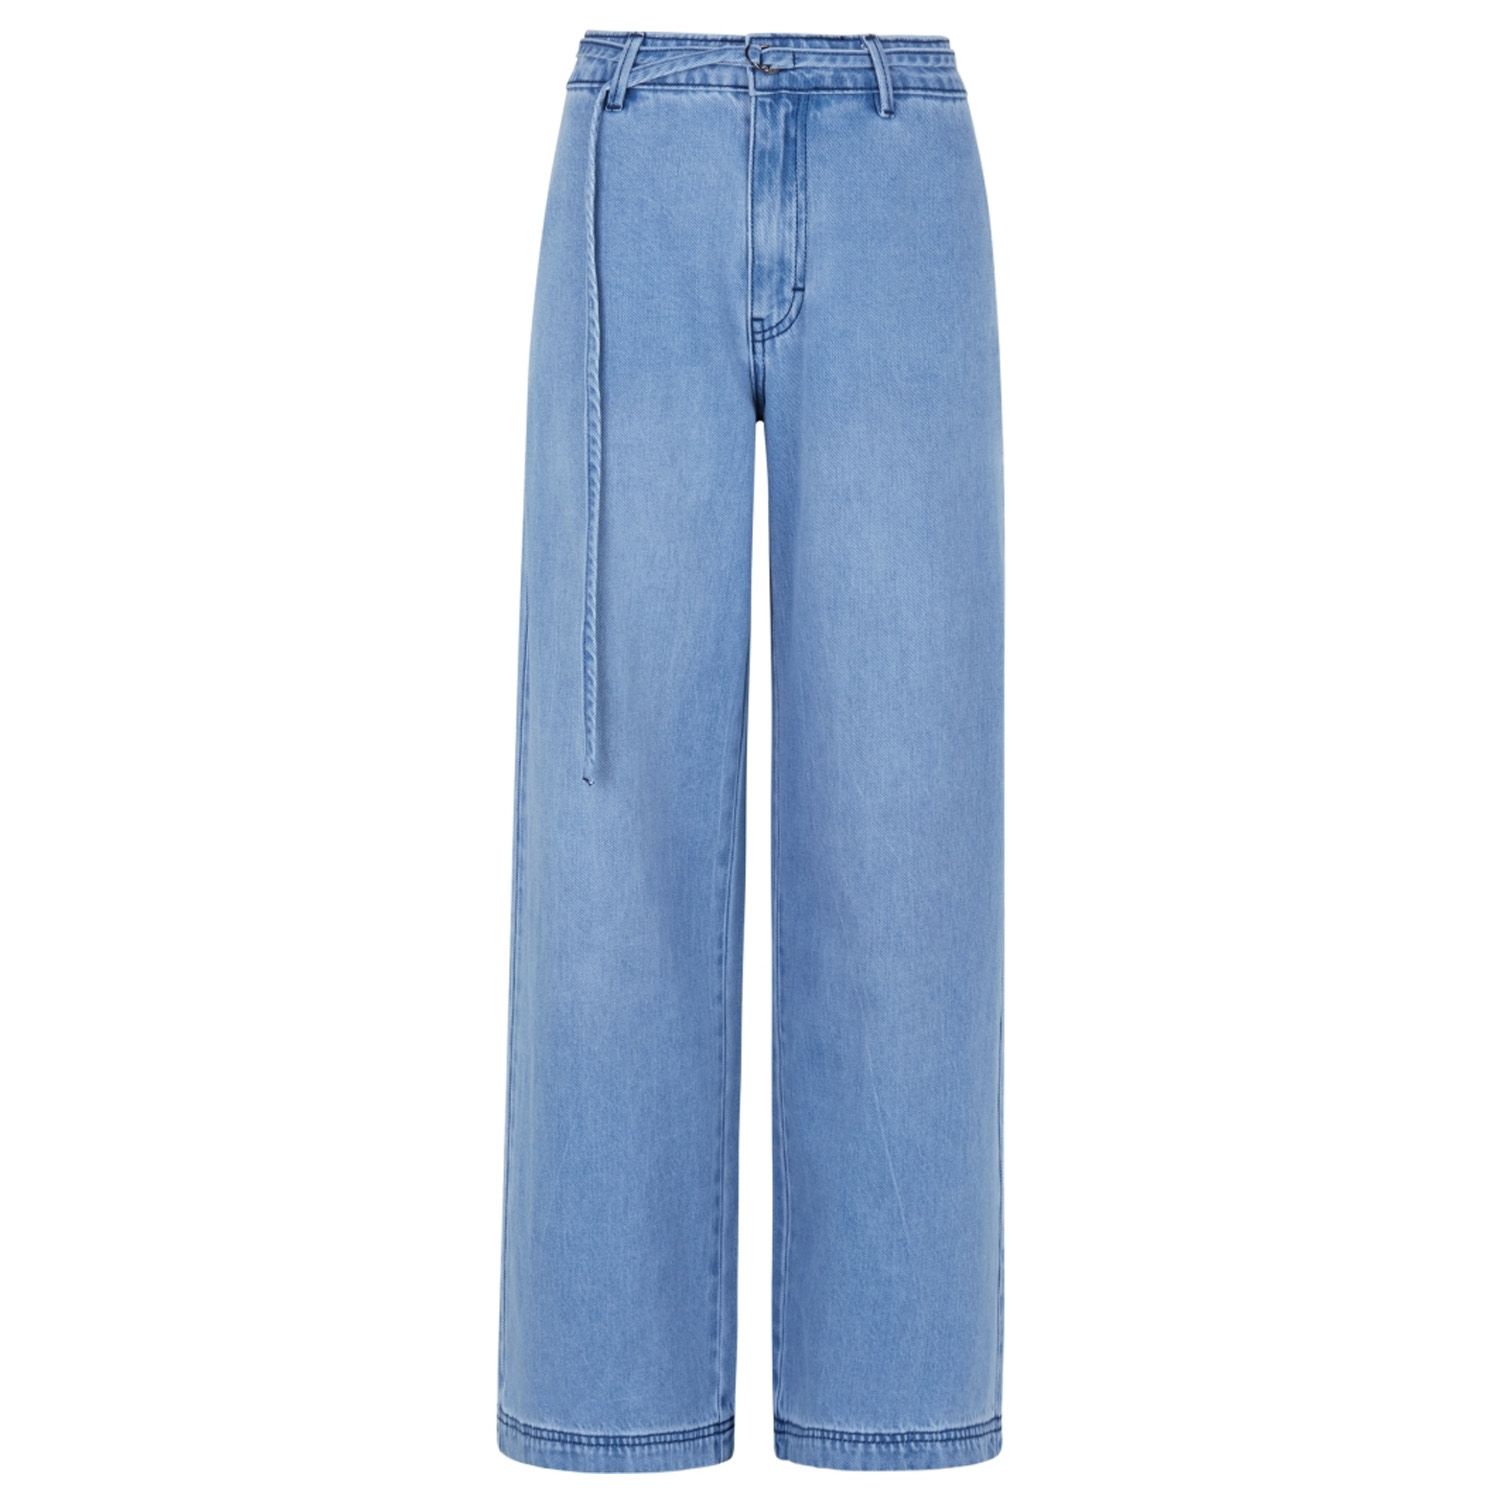 Catalina Jeans Light Blue Wash | Soft Rebels